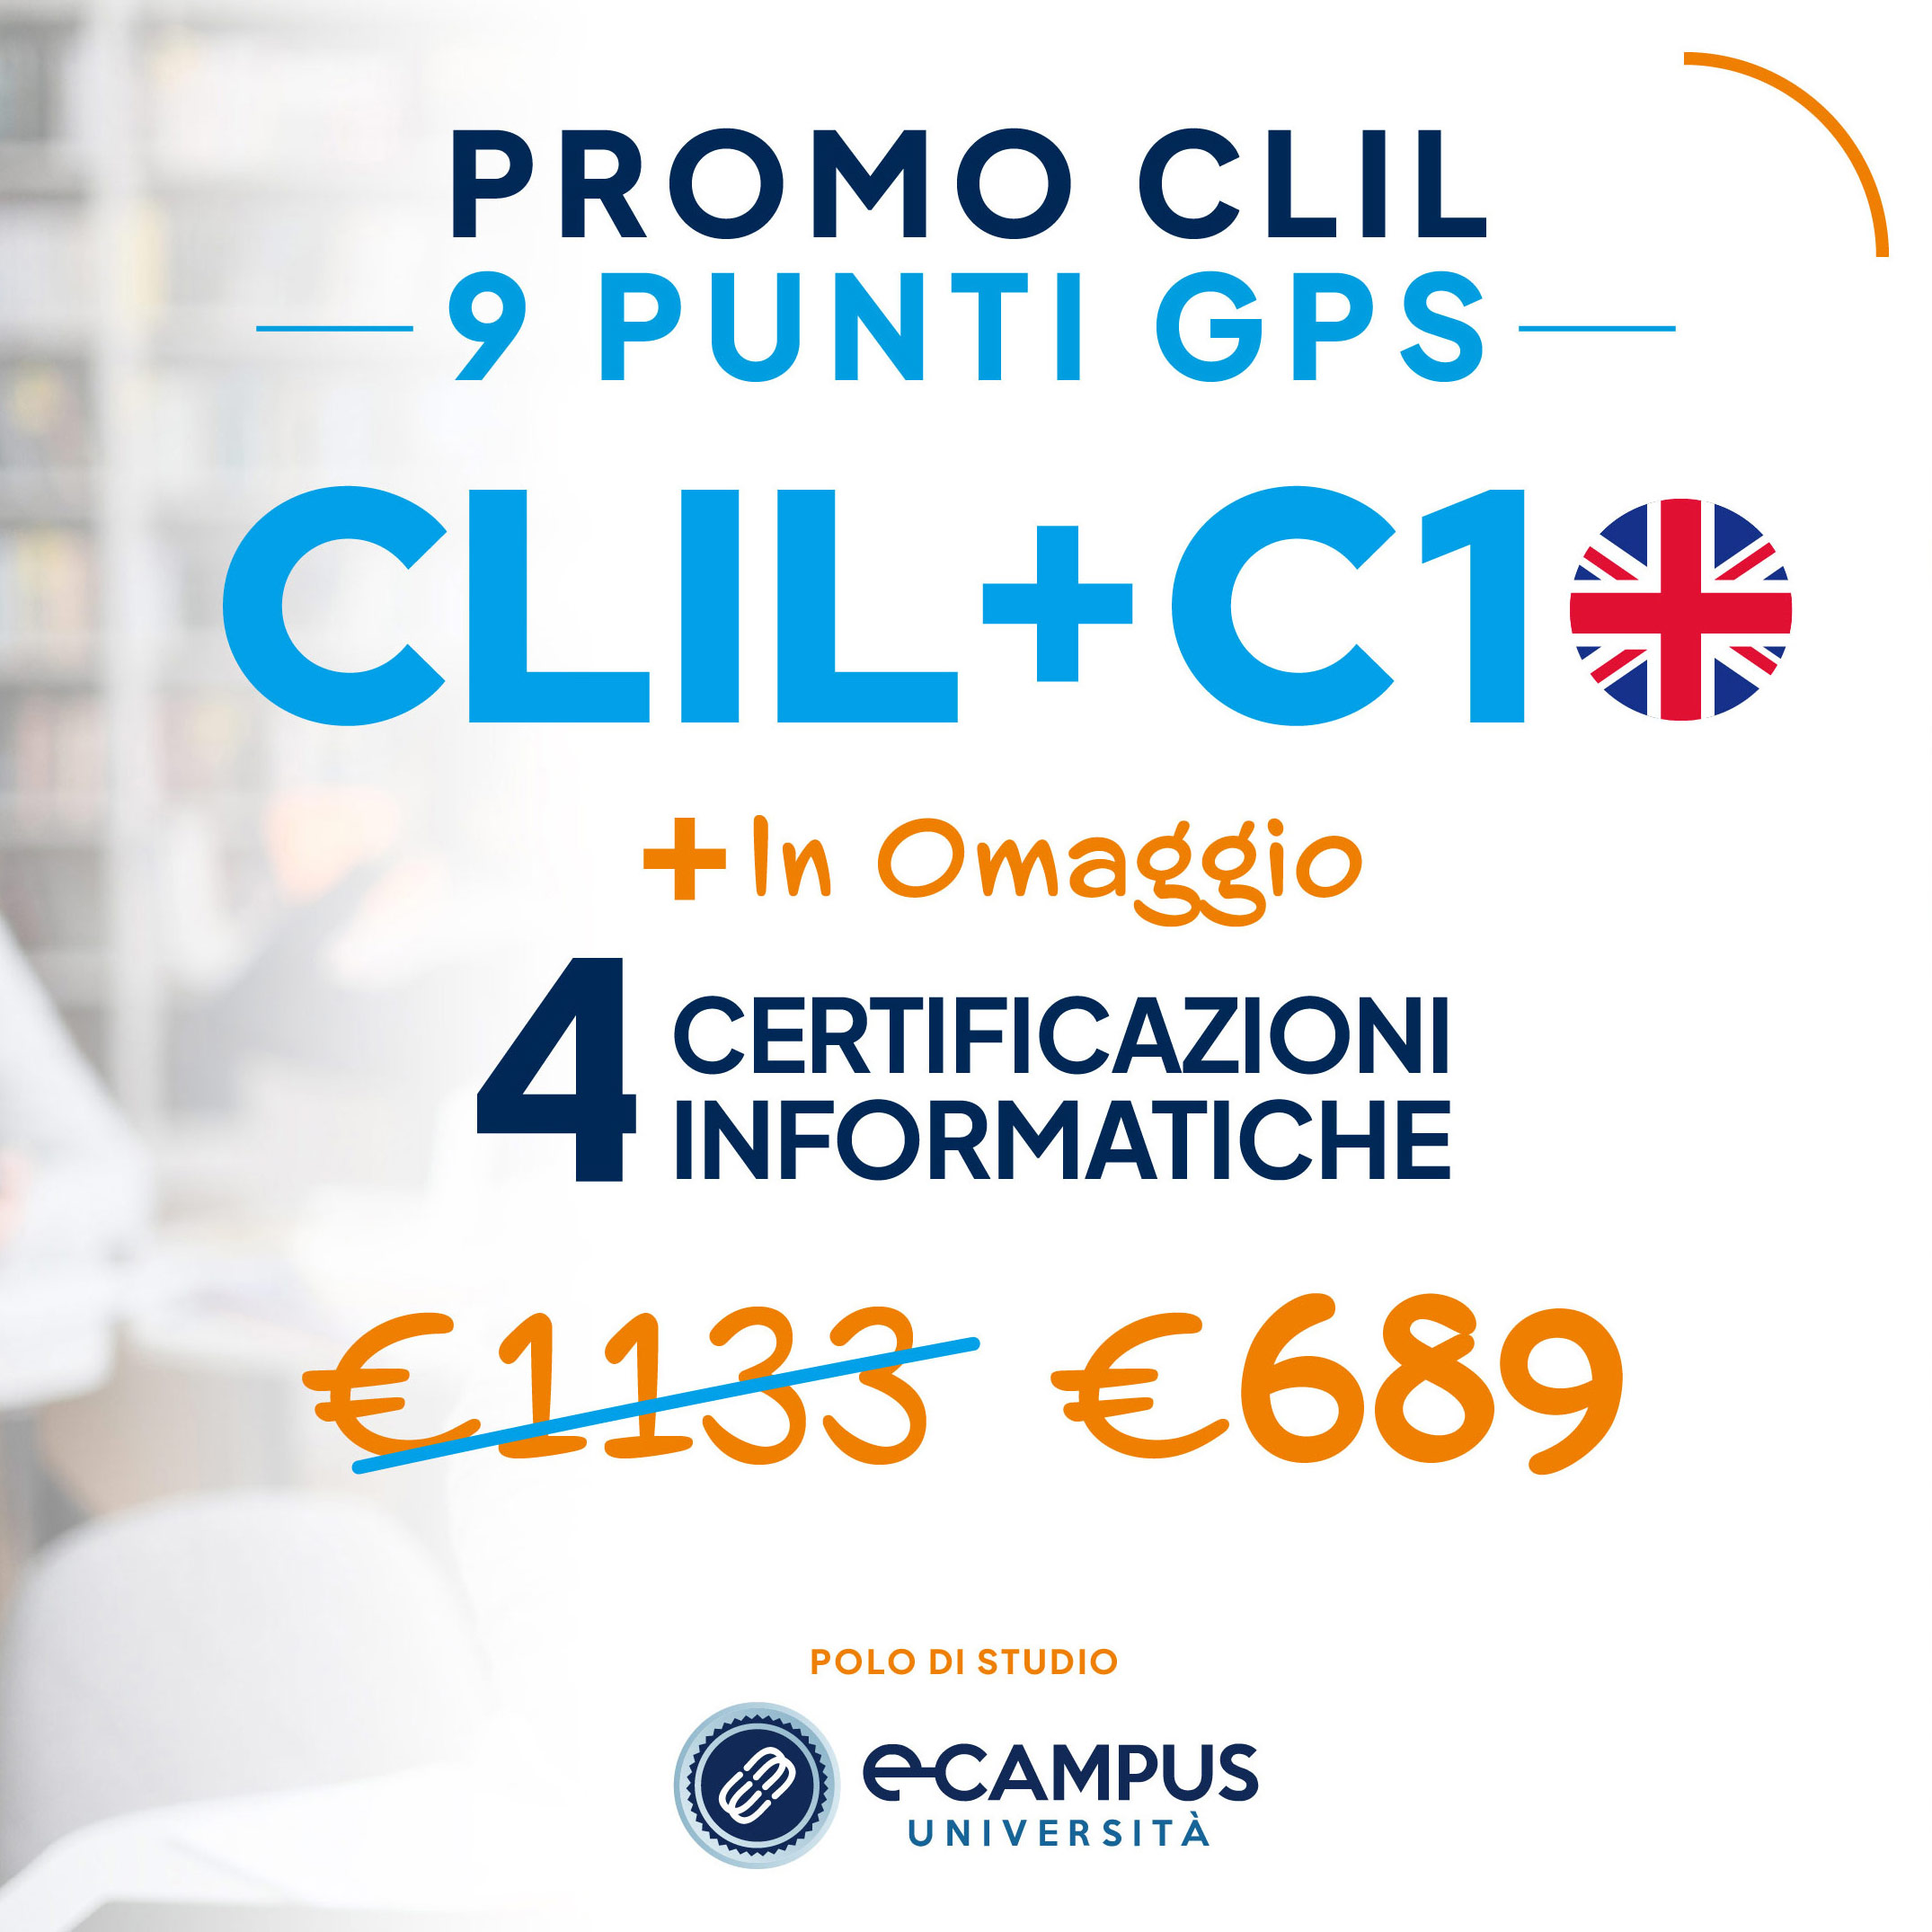 PROMO CLIL C1 9 Punti GPS - 4 Certificazioni Informatiche in Omaggio